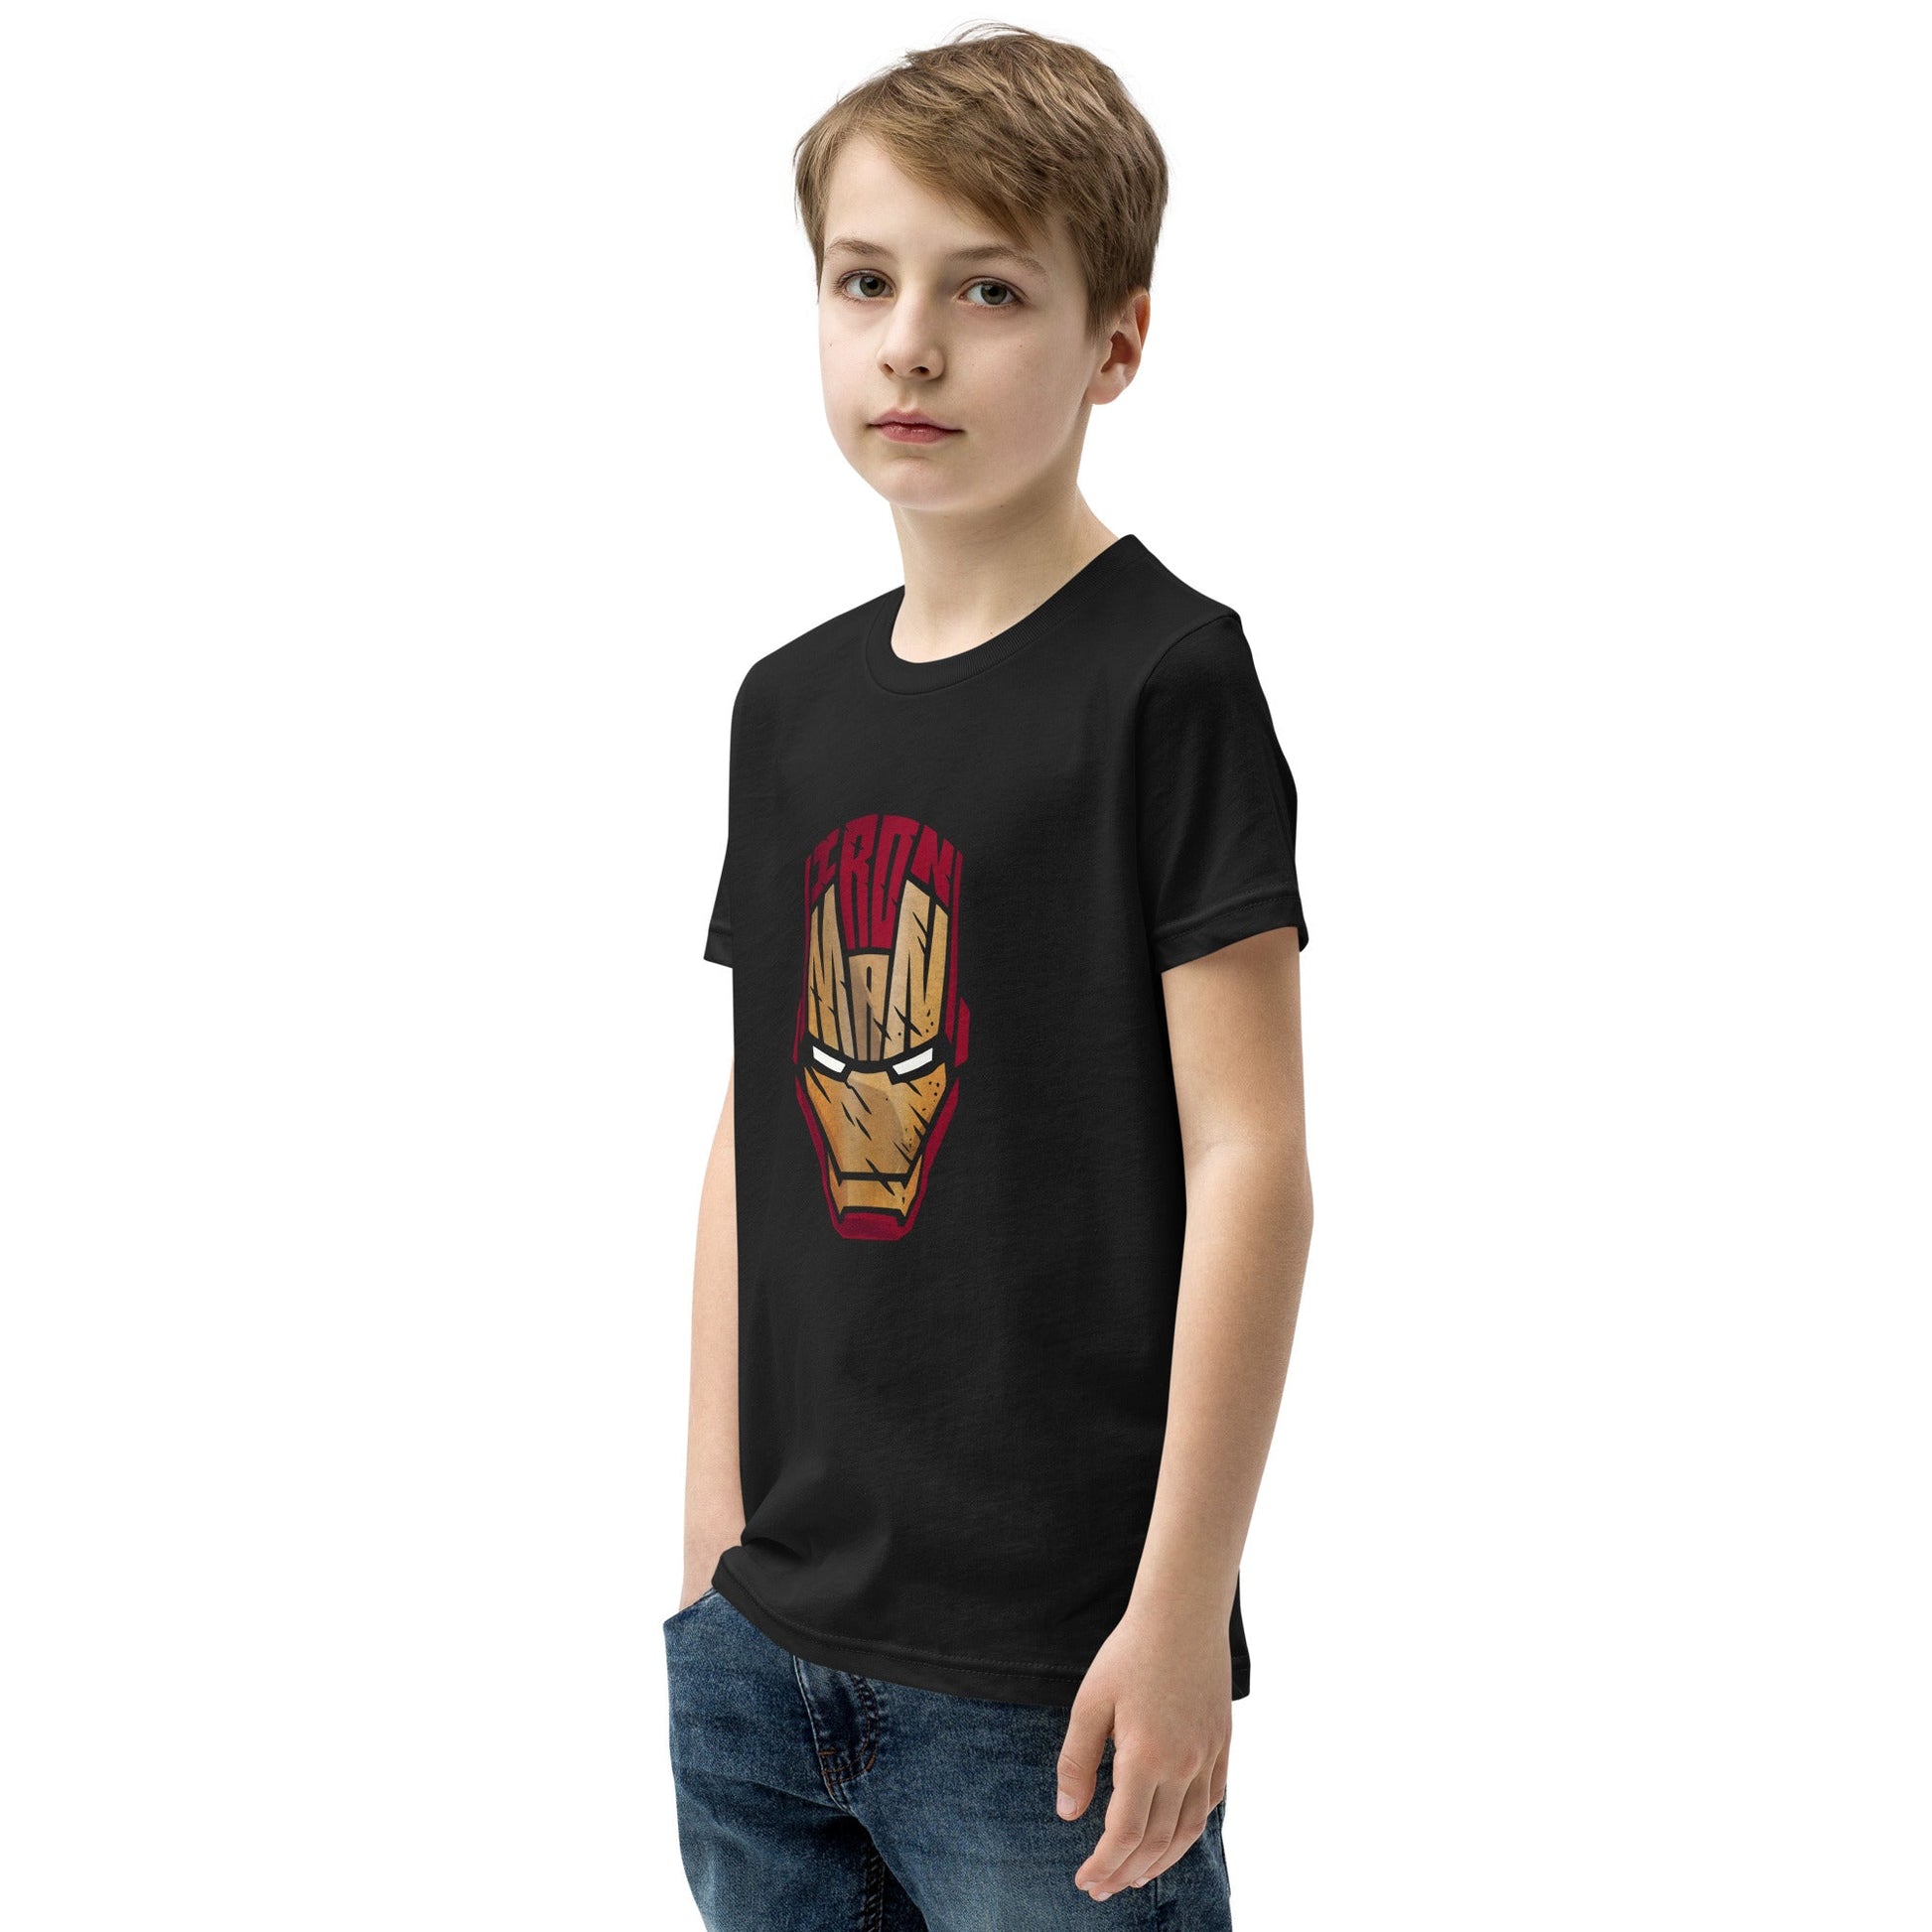 IRON MAN Youth T-Shirt - Bonotee